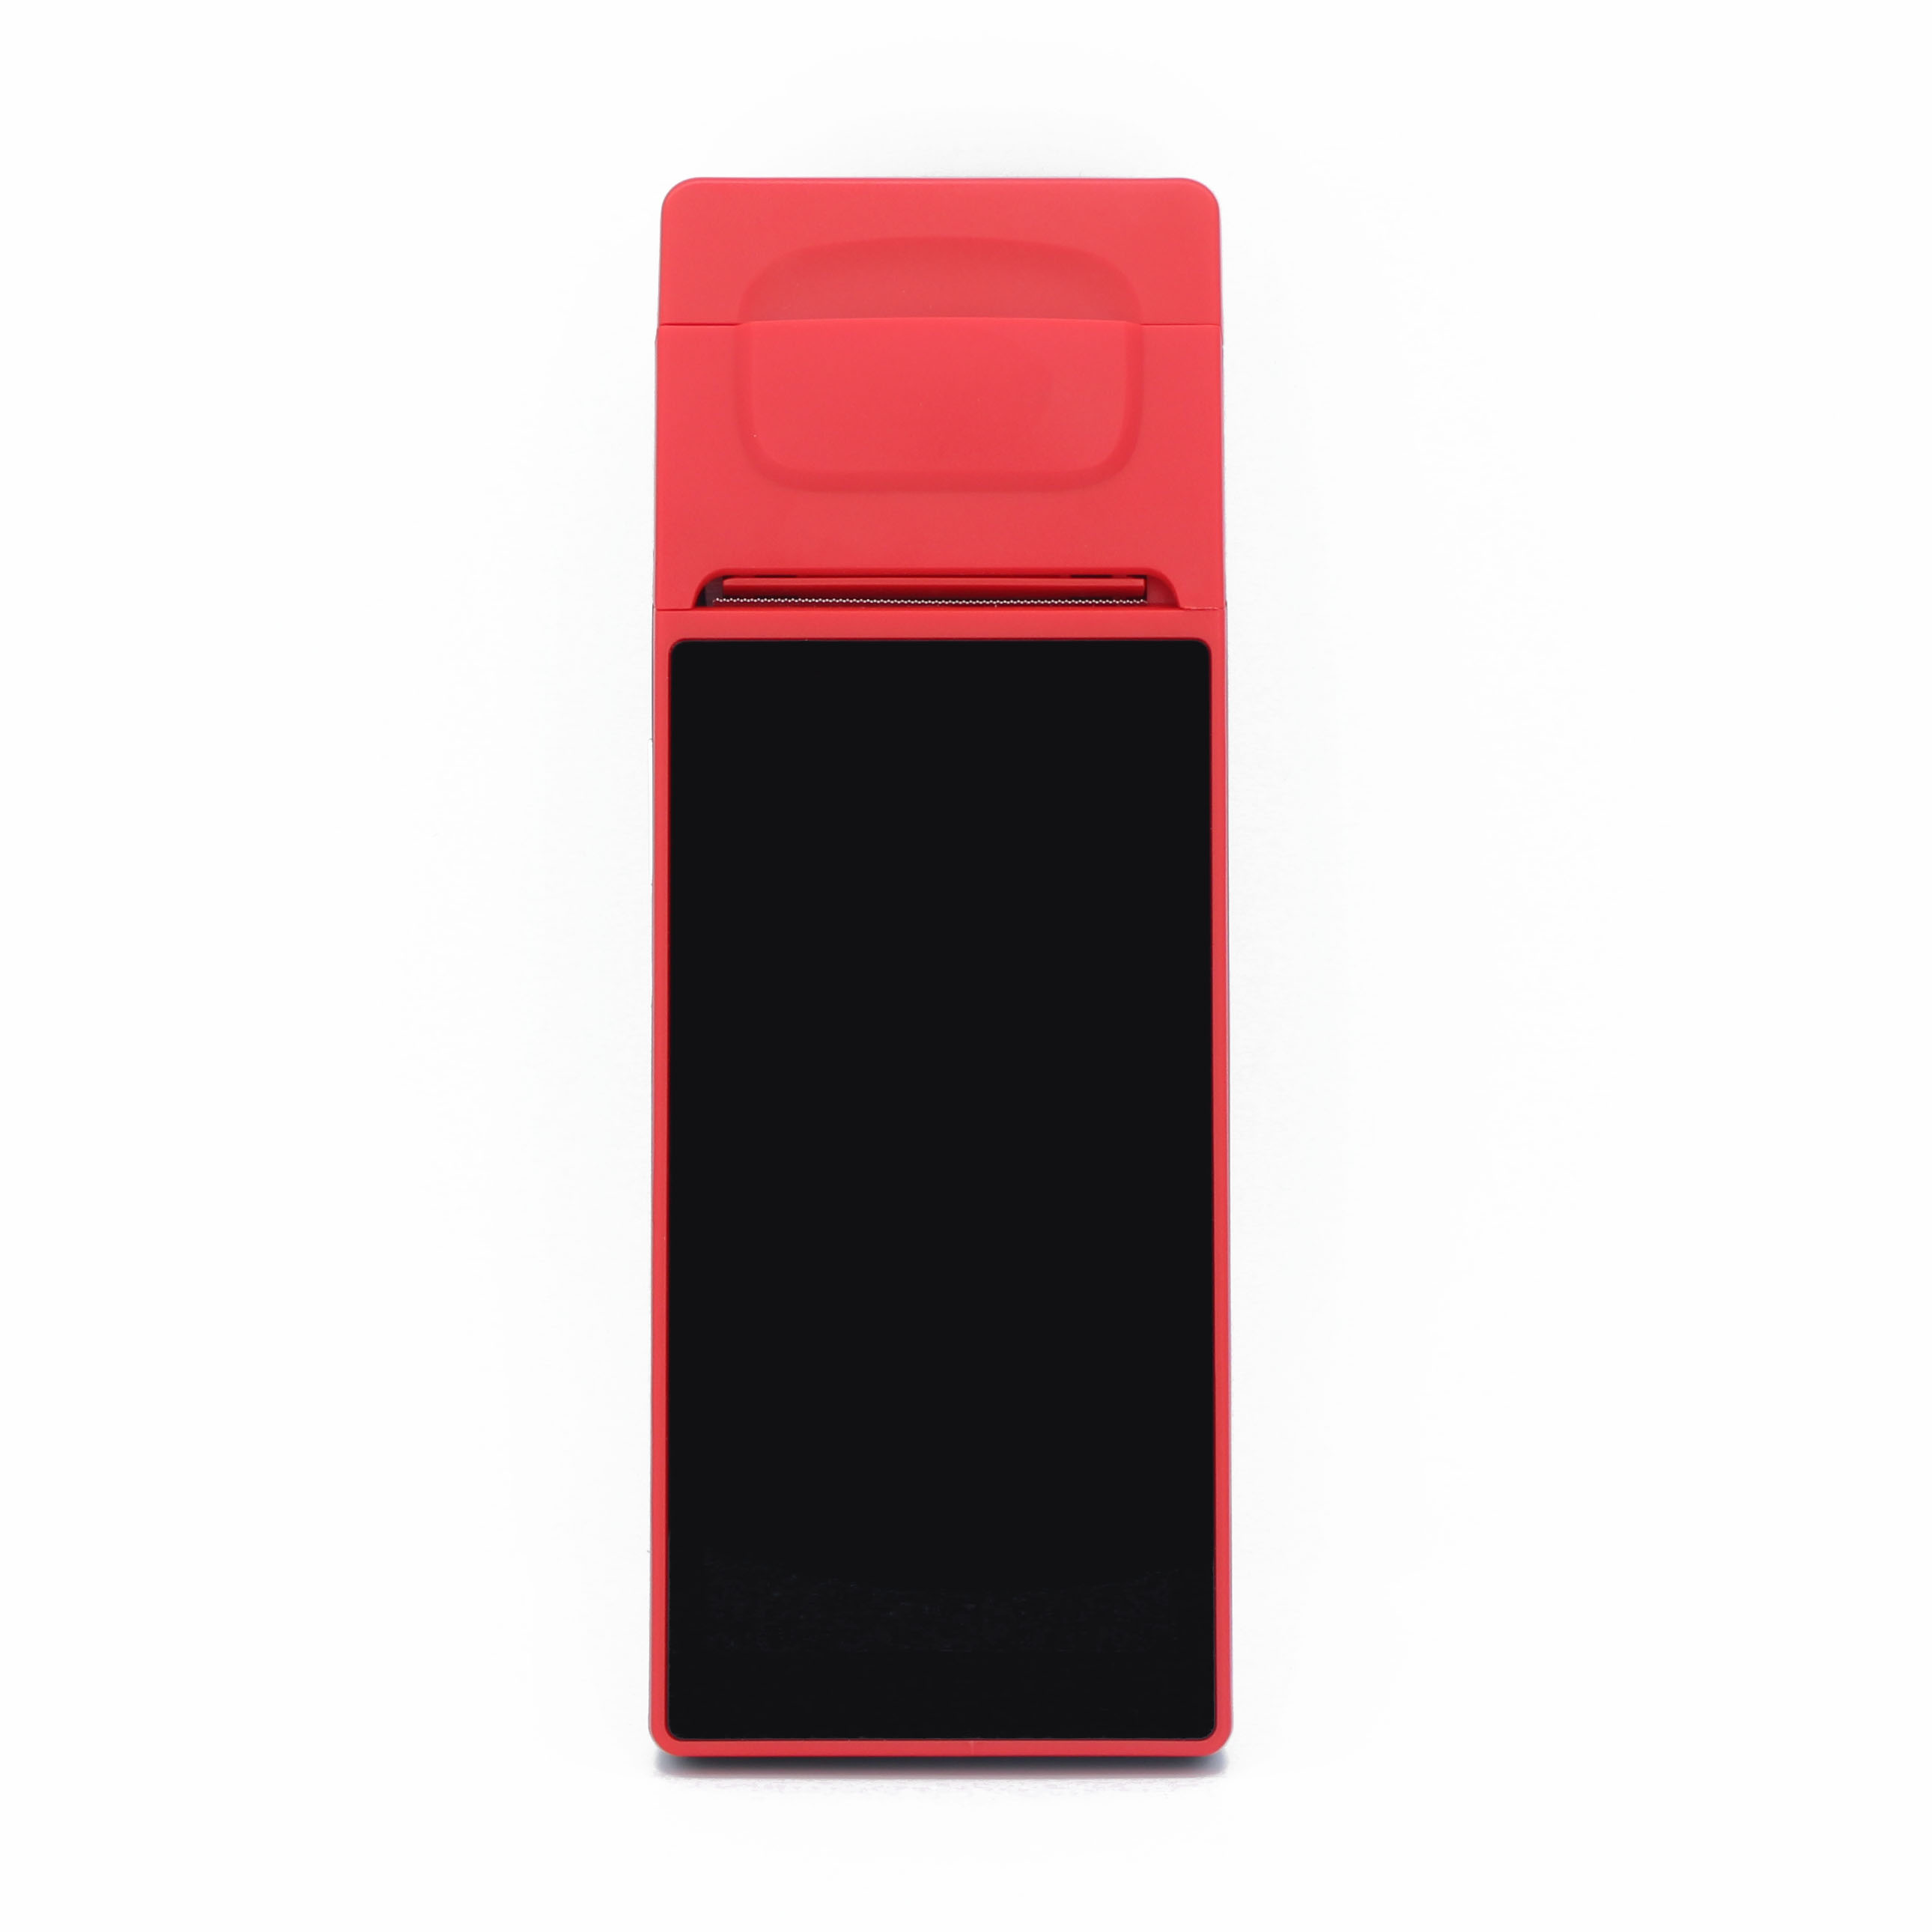 Terminale POS Android portatile touch screen da 6 pollici con stampante per parcheggio auto
